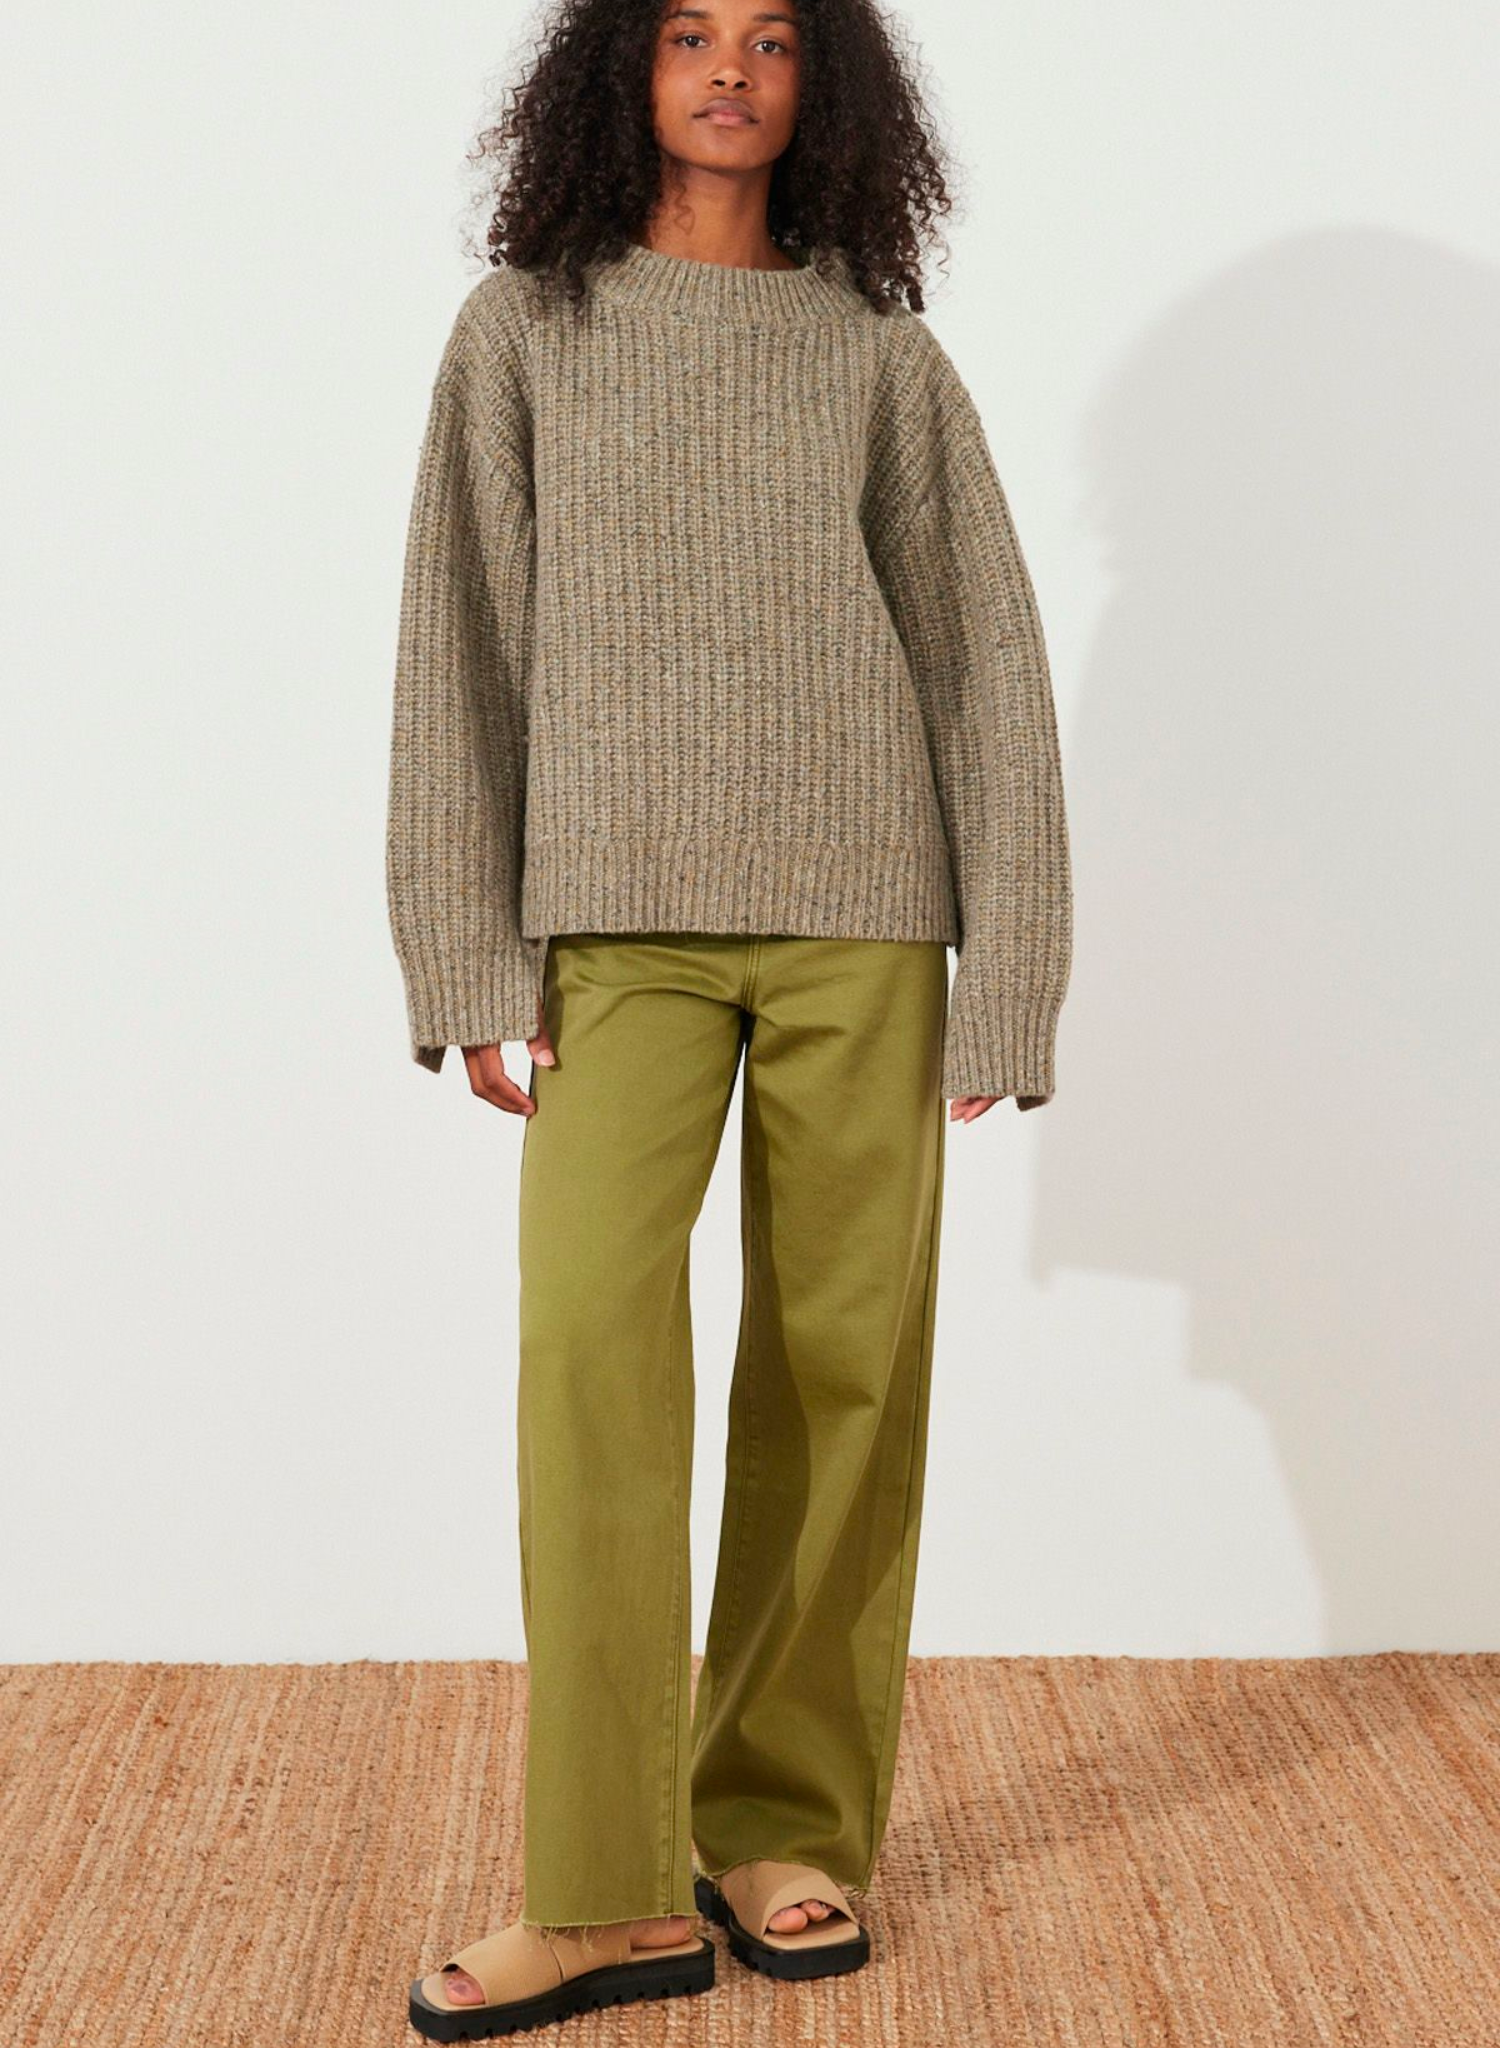 Olive Merino Wool Blend Knit Jumper